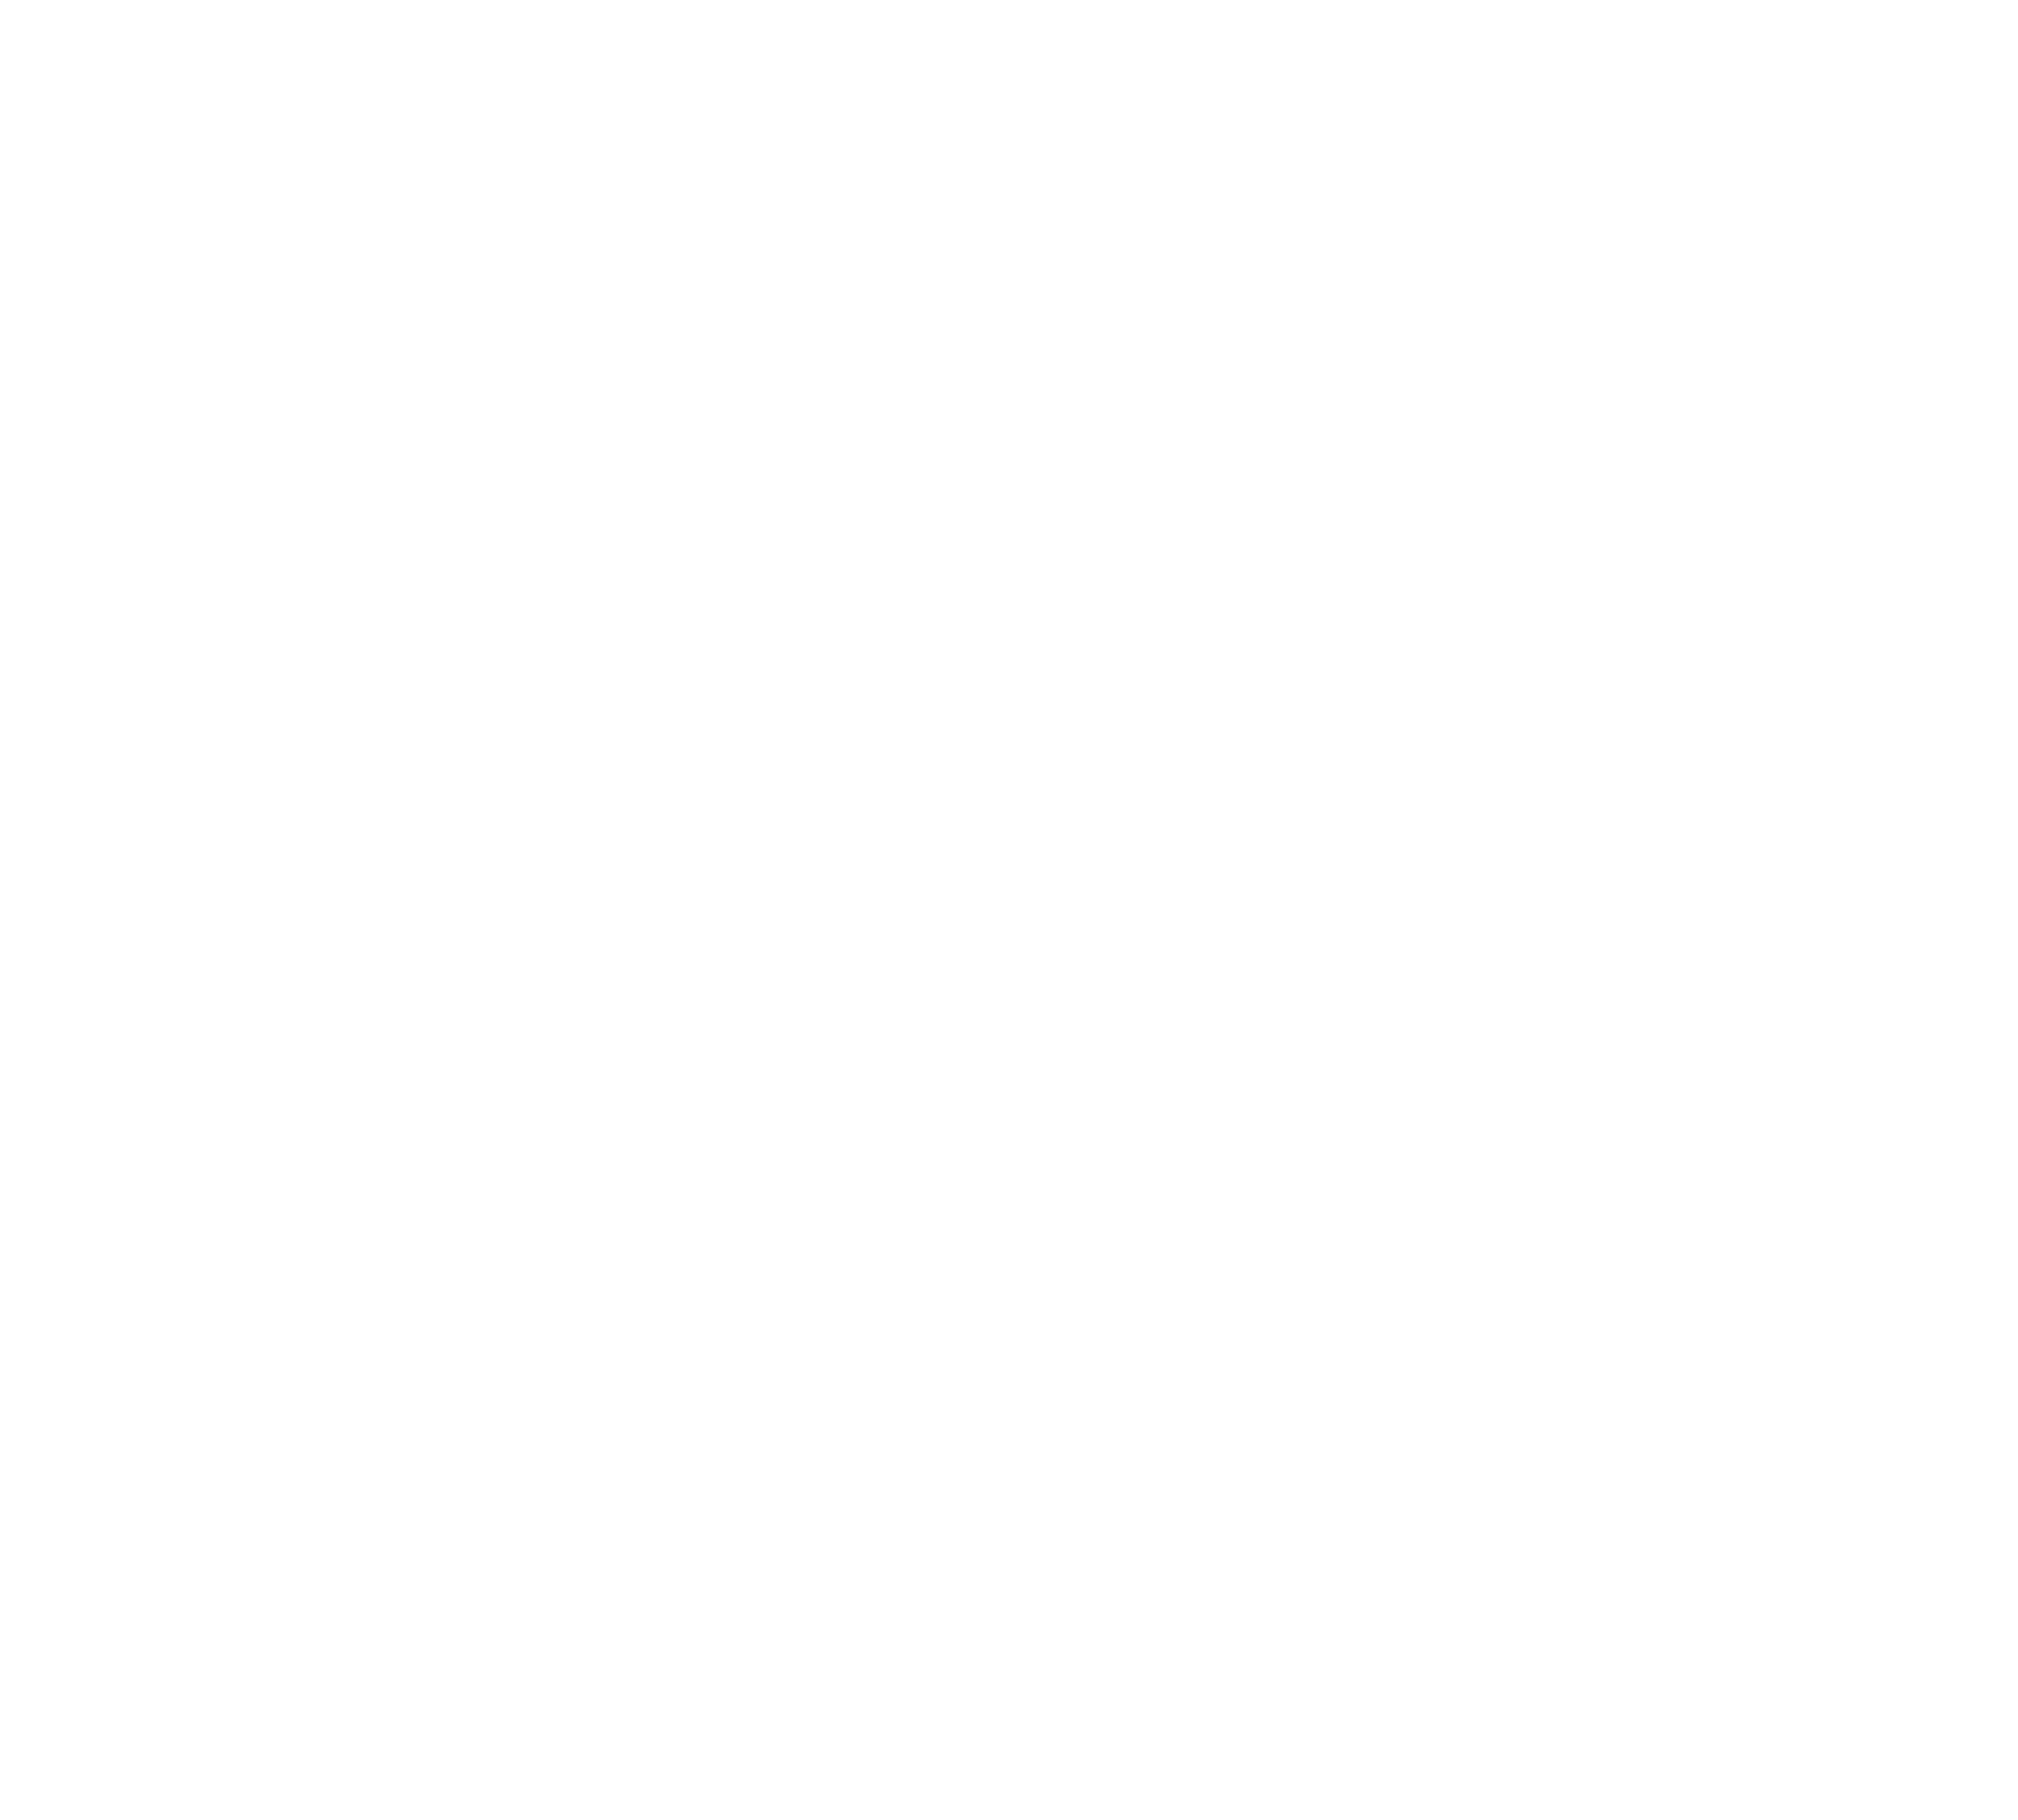 SAP Tech India